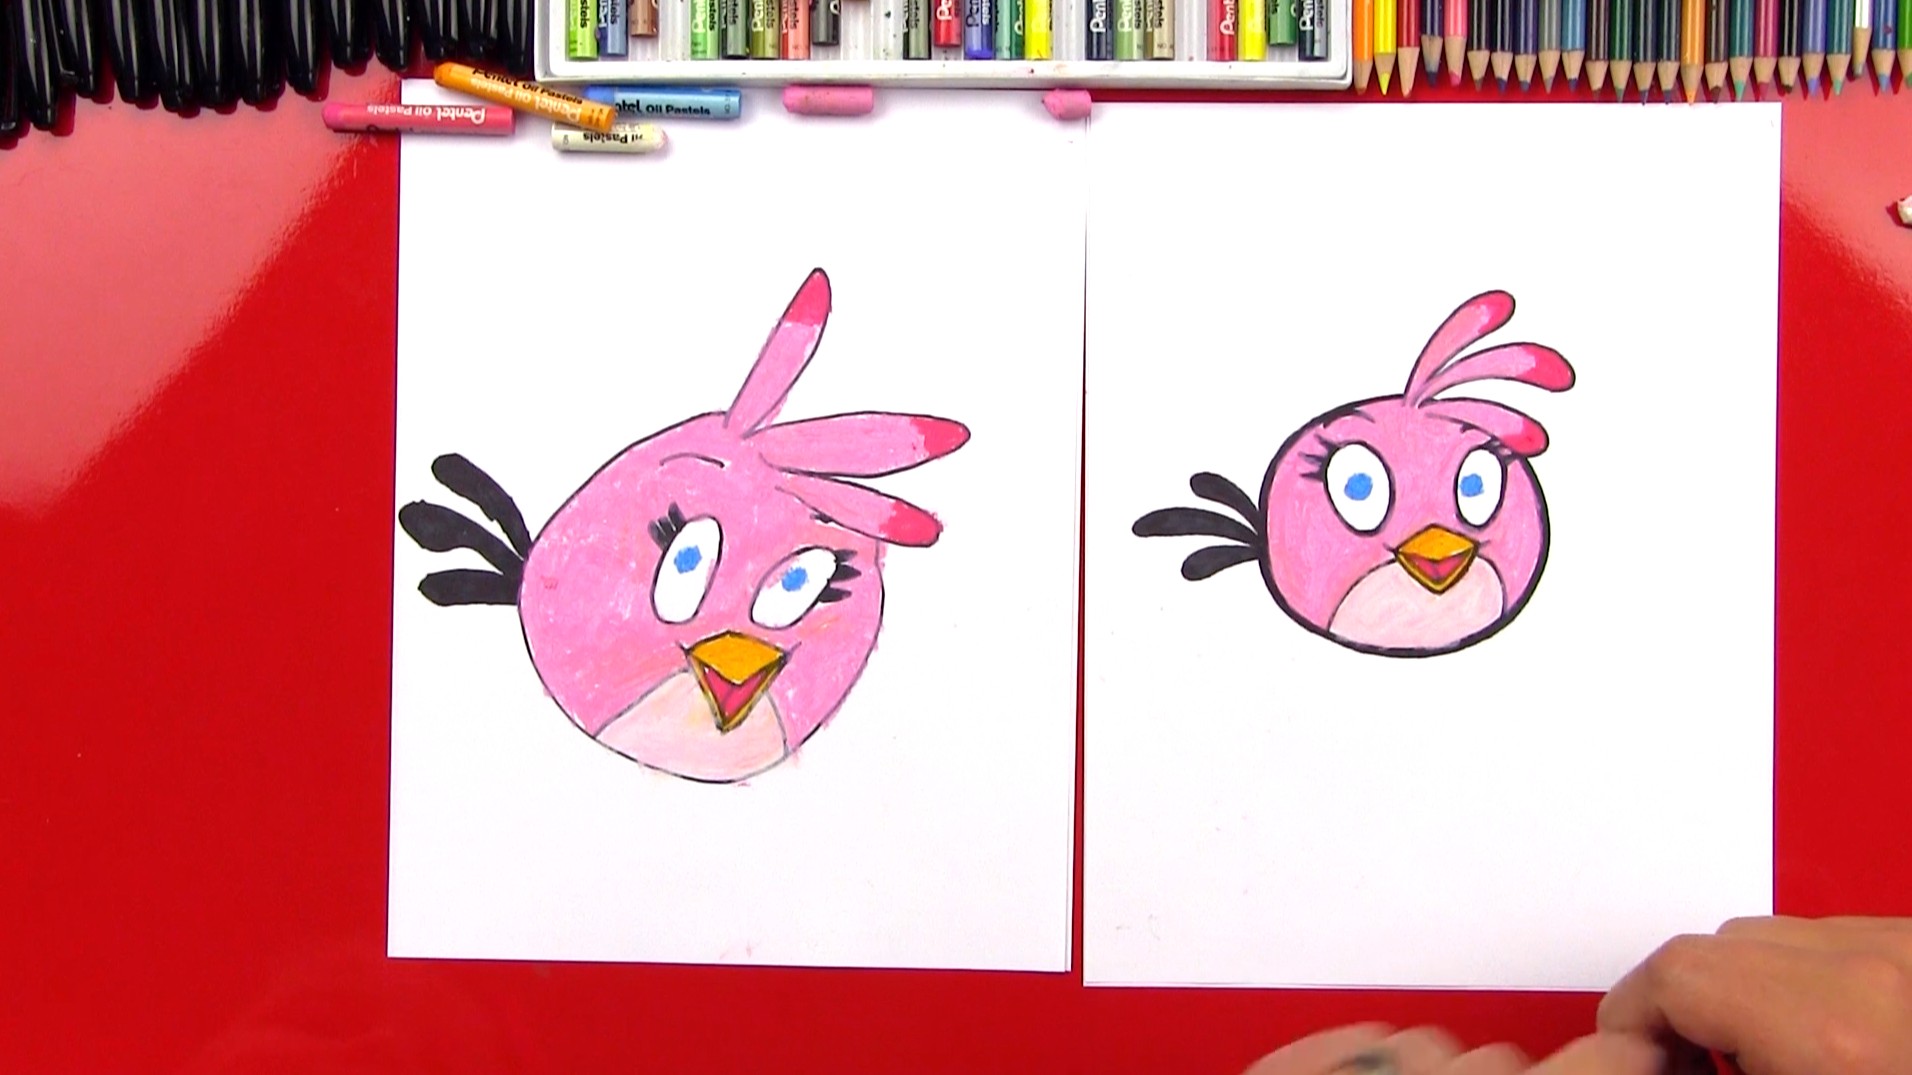 How to draw Angry Bird | selamat datang di yogadinata's blog